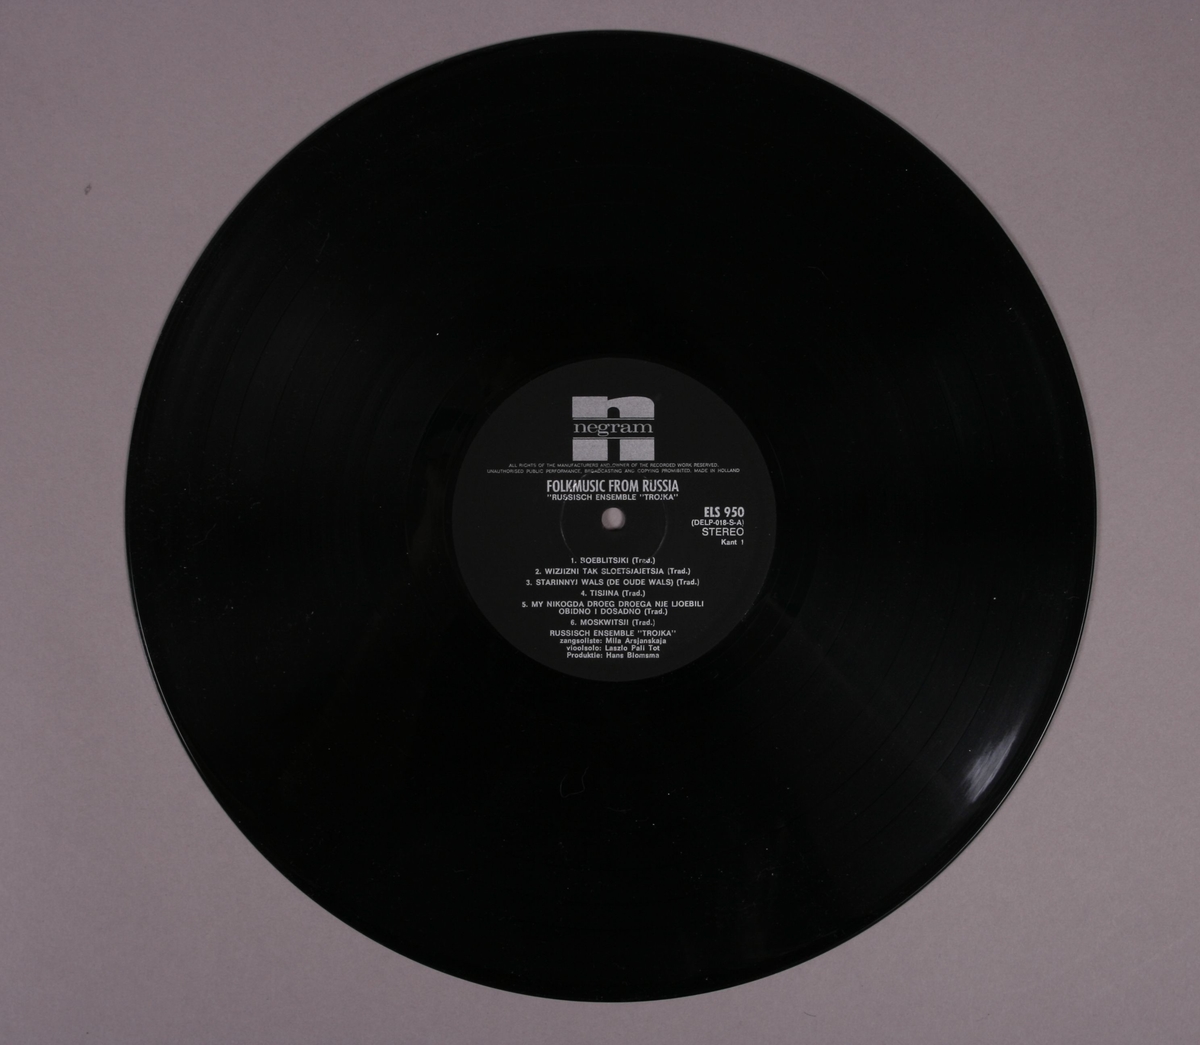 Grammofonplate i svart vinyl og plateomslag i papp. Platen tilhører serien "Volksmuziek Uit". Plata ligger i en papirlomme.